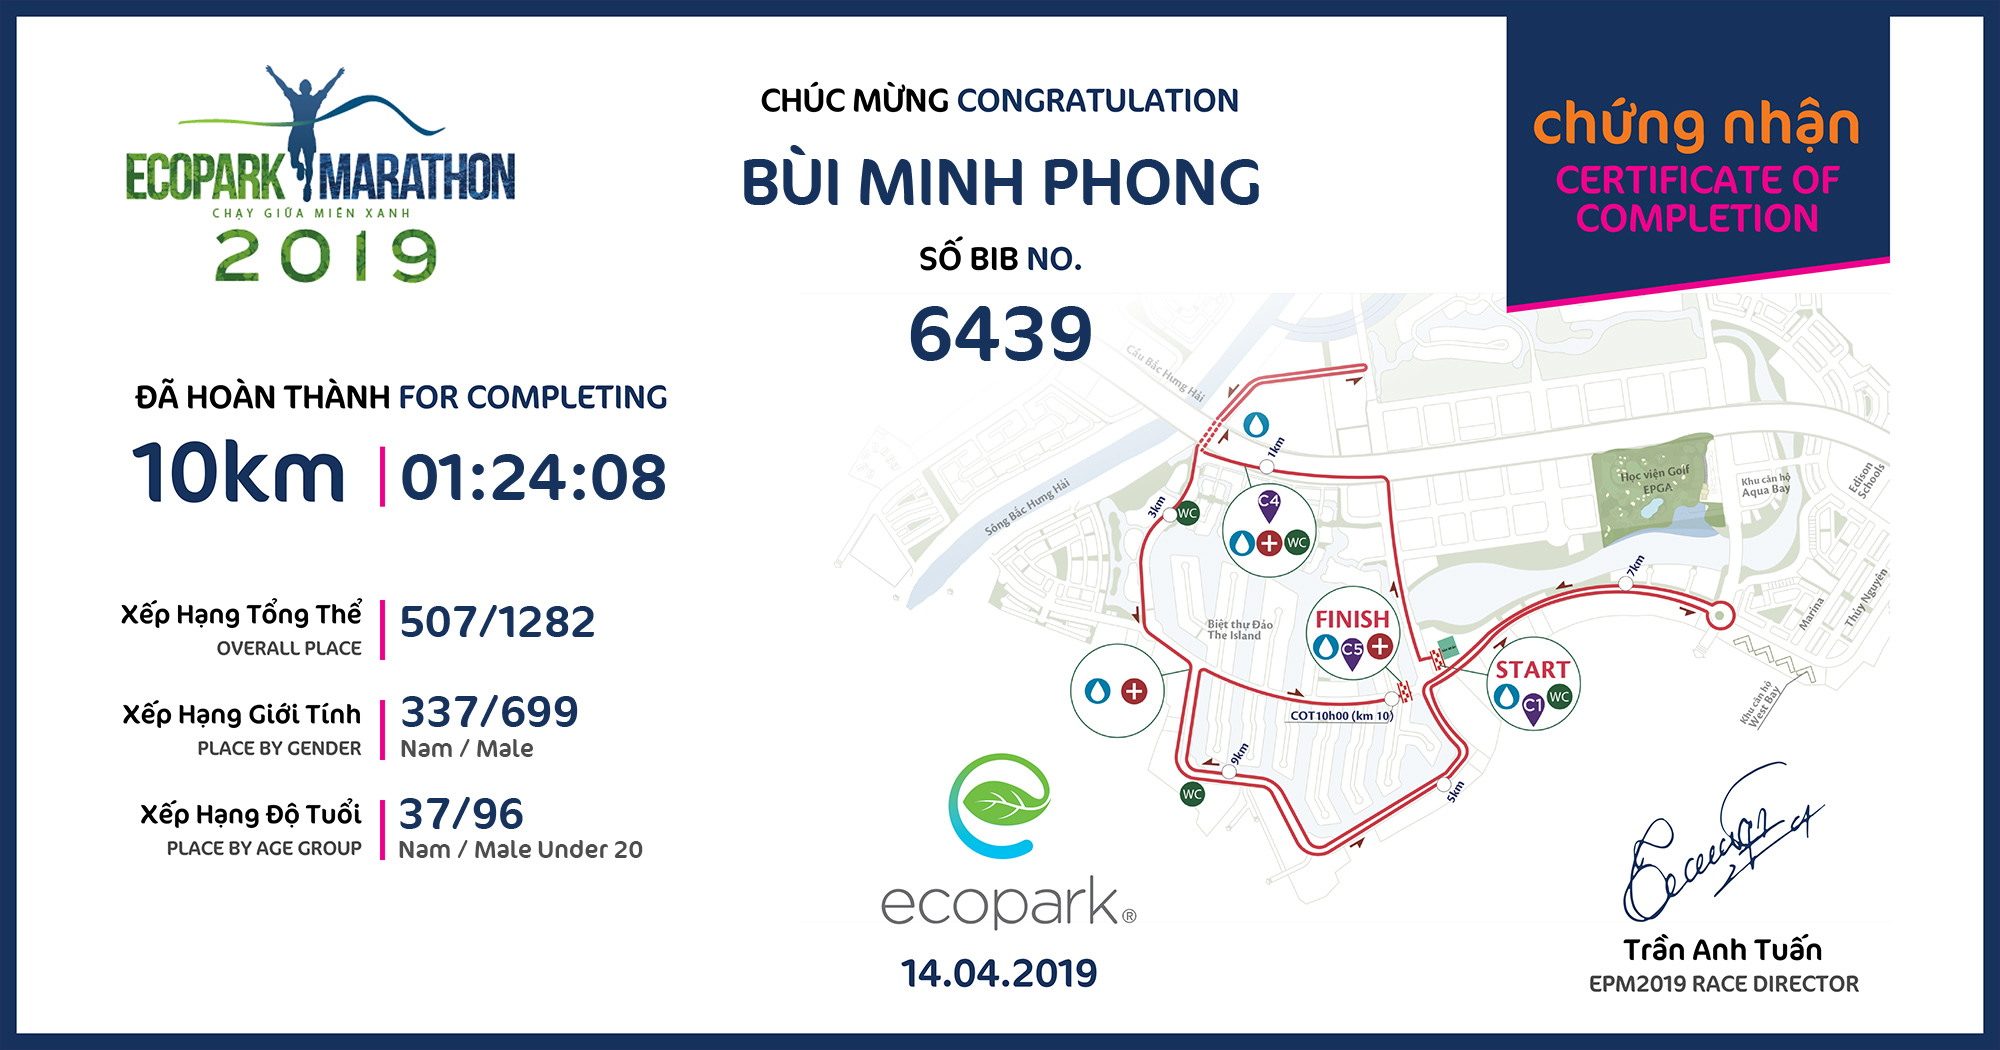 6439 - Bùi Minh Phong